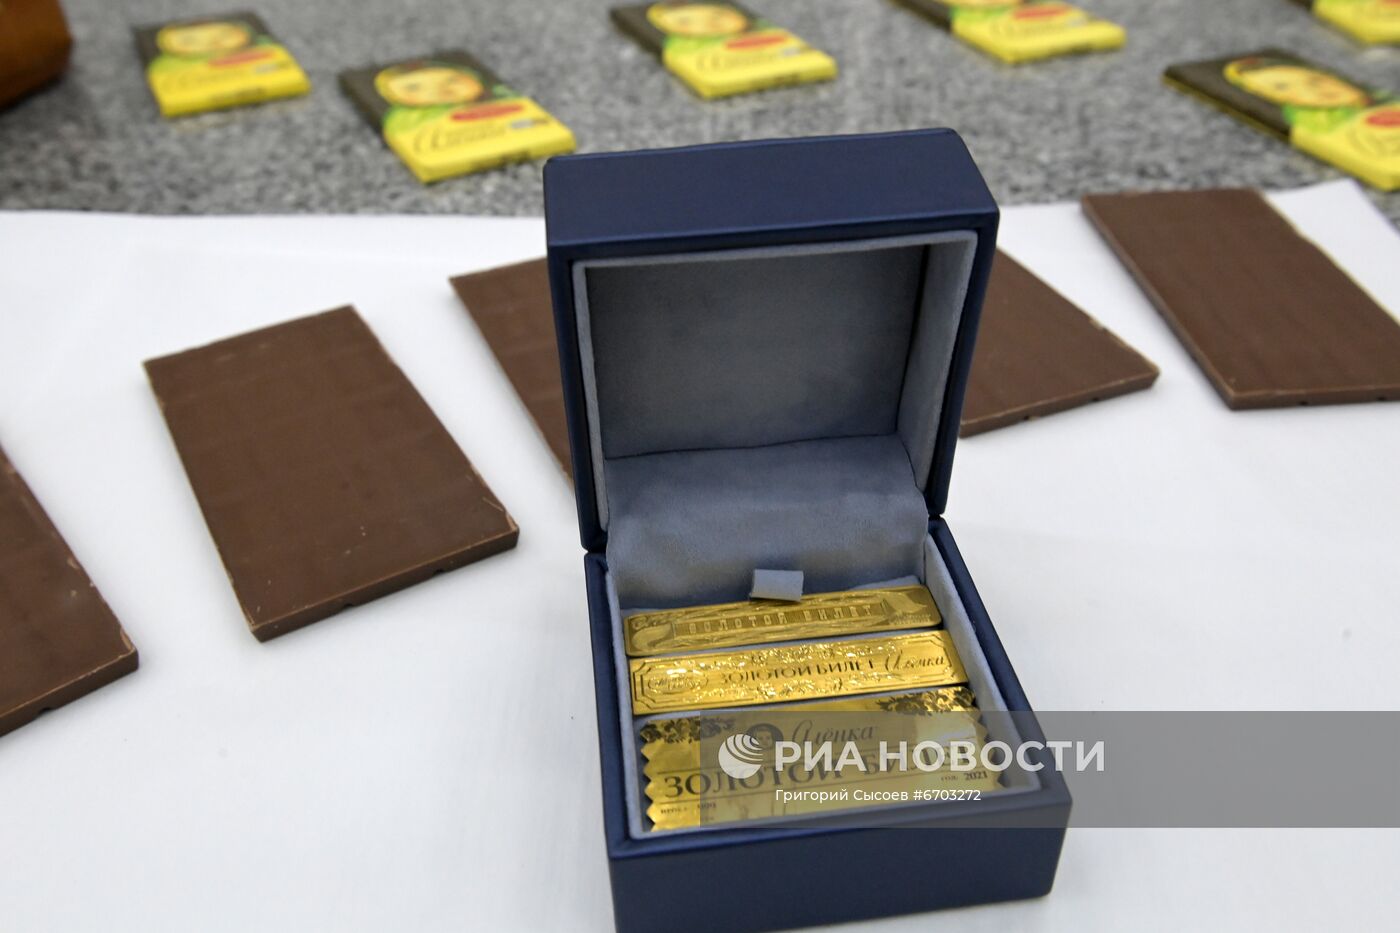 Кондитеры вложили золотые билеты в плитки молочного шоколада "Аленка"